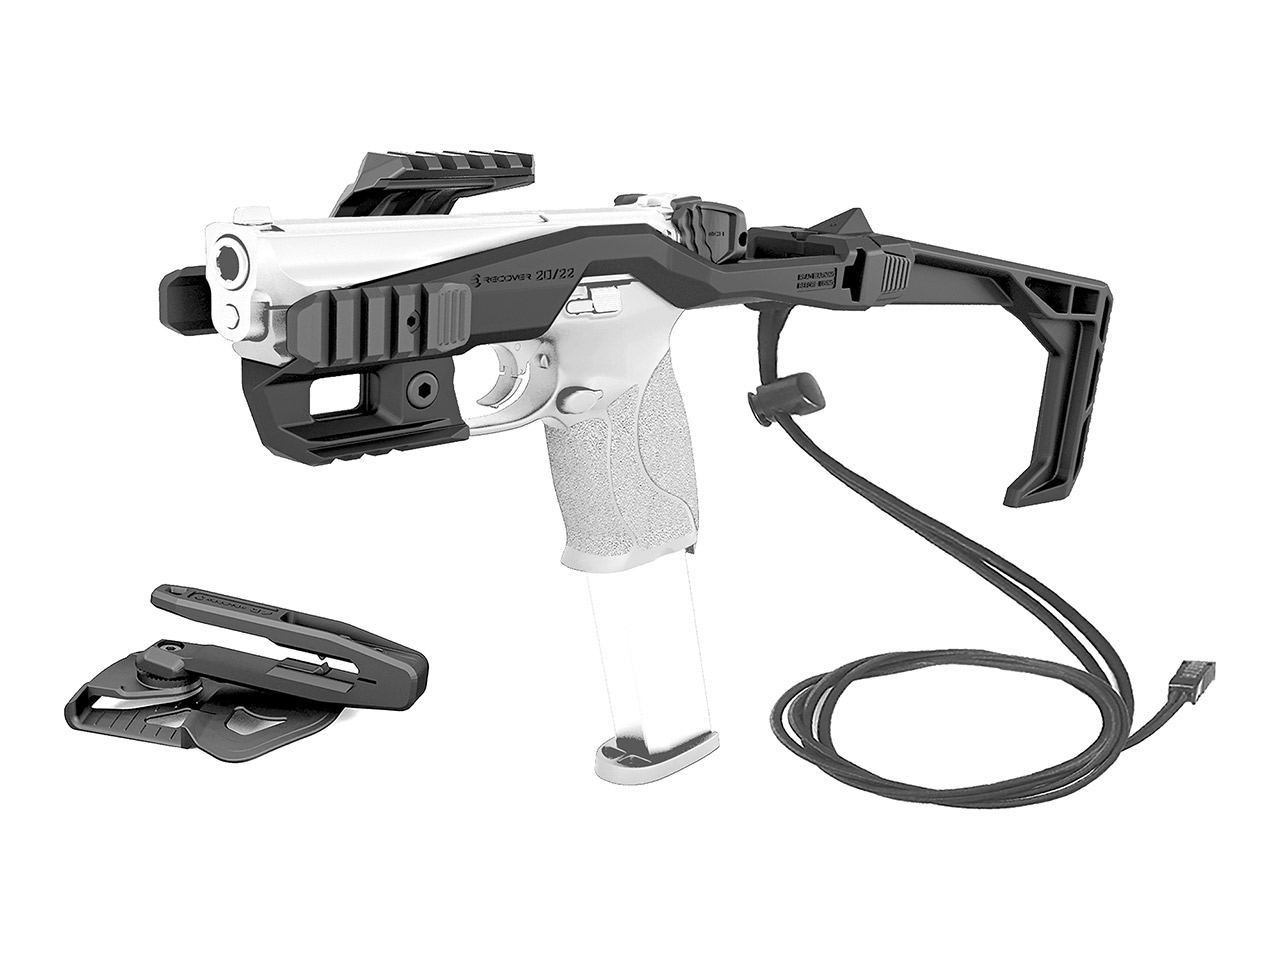 Recover 20/22 Stabilizer Komplettkit für diverse Smith & Wesson M&P Pistolen schwarz inklusive Holster